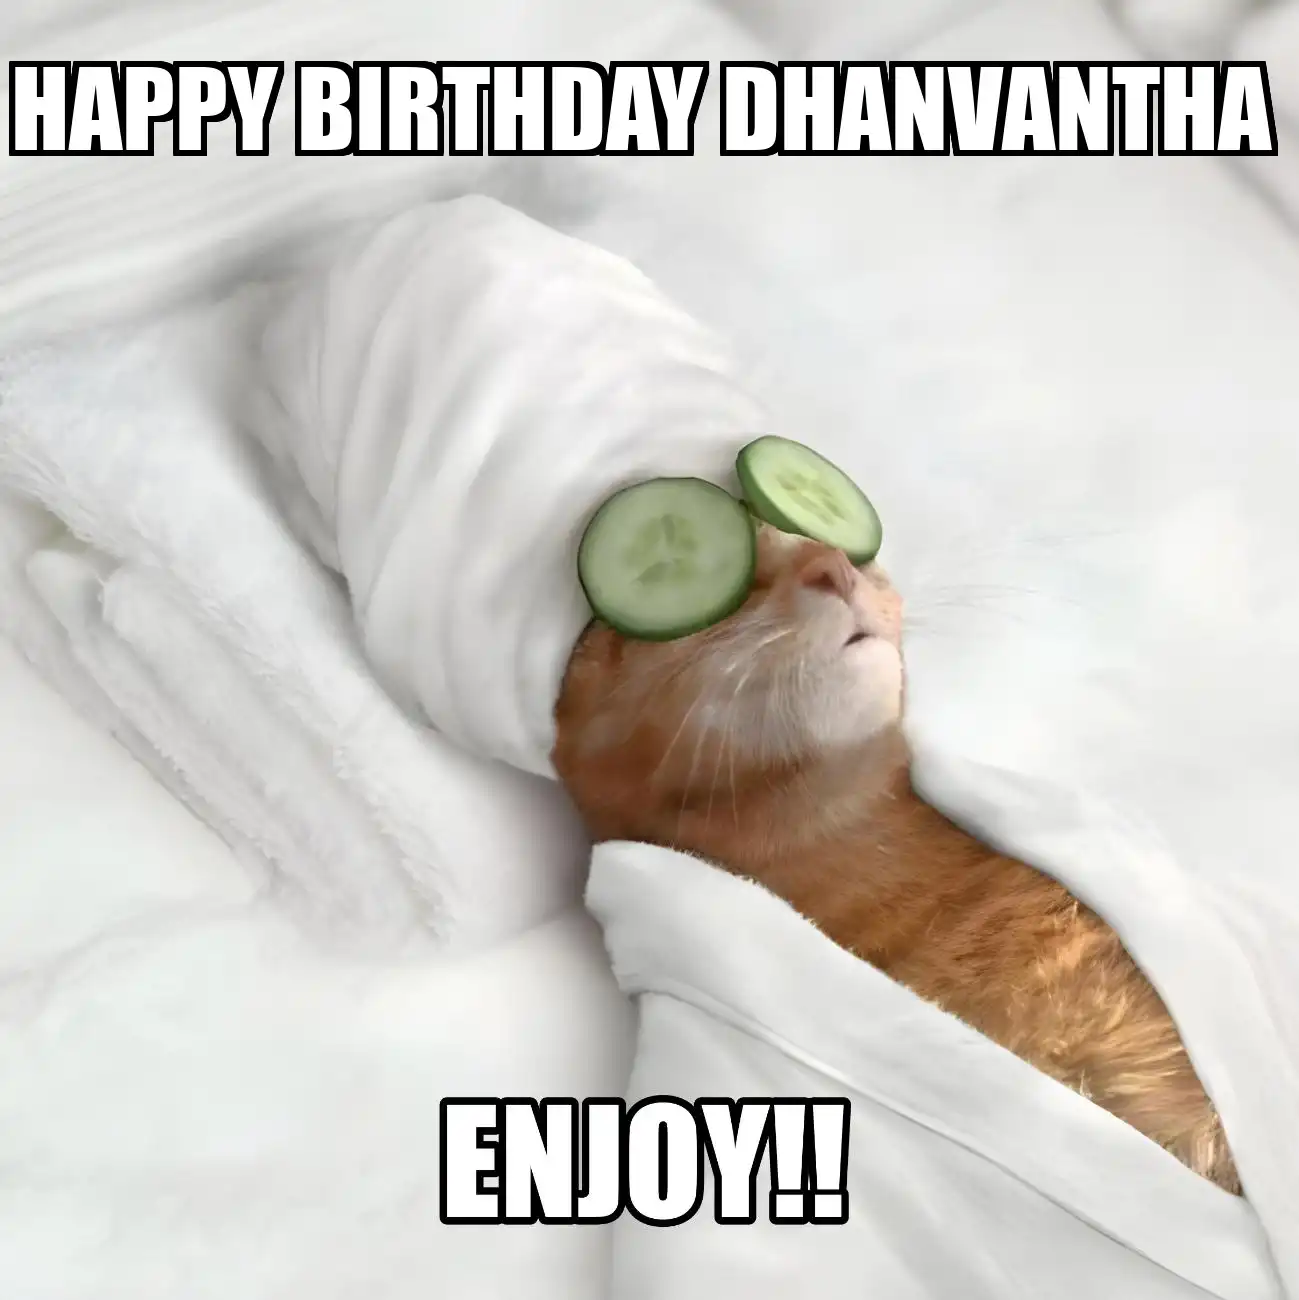 Happy Birthday Dhanvantha Enjoy Cat Meme